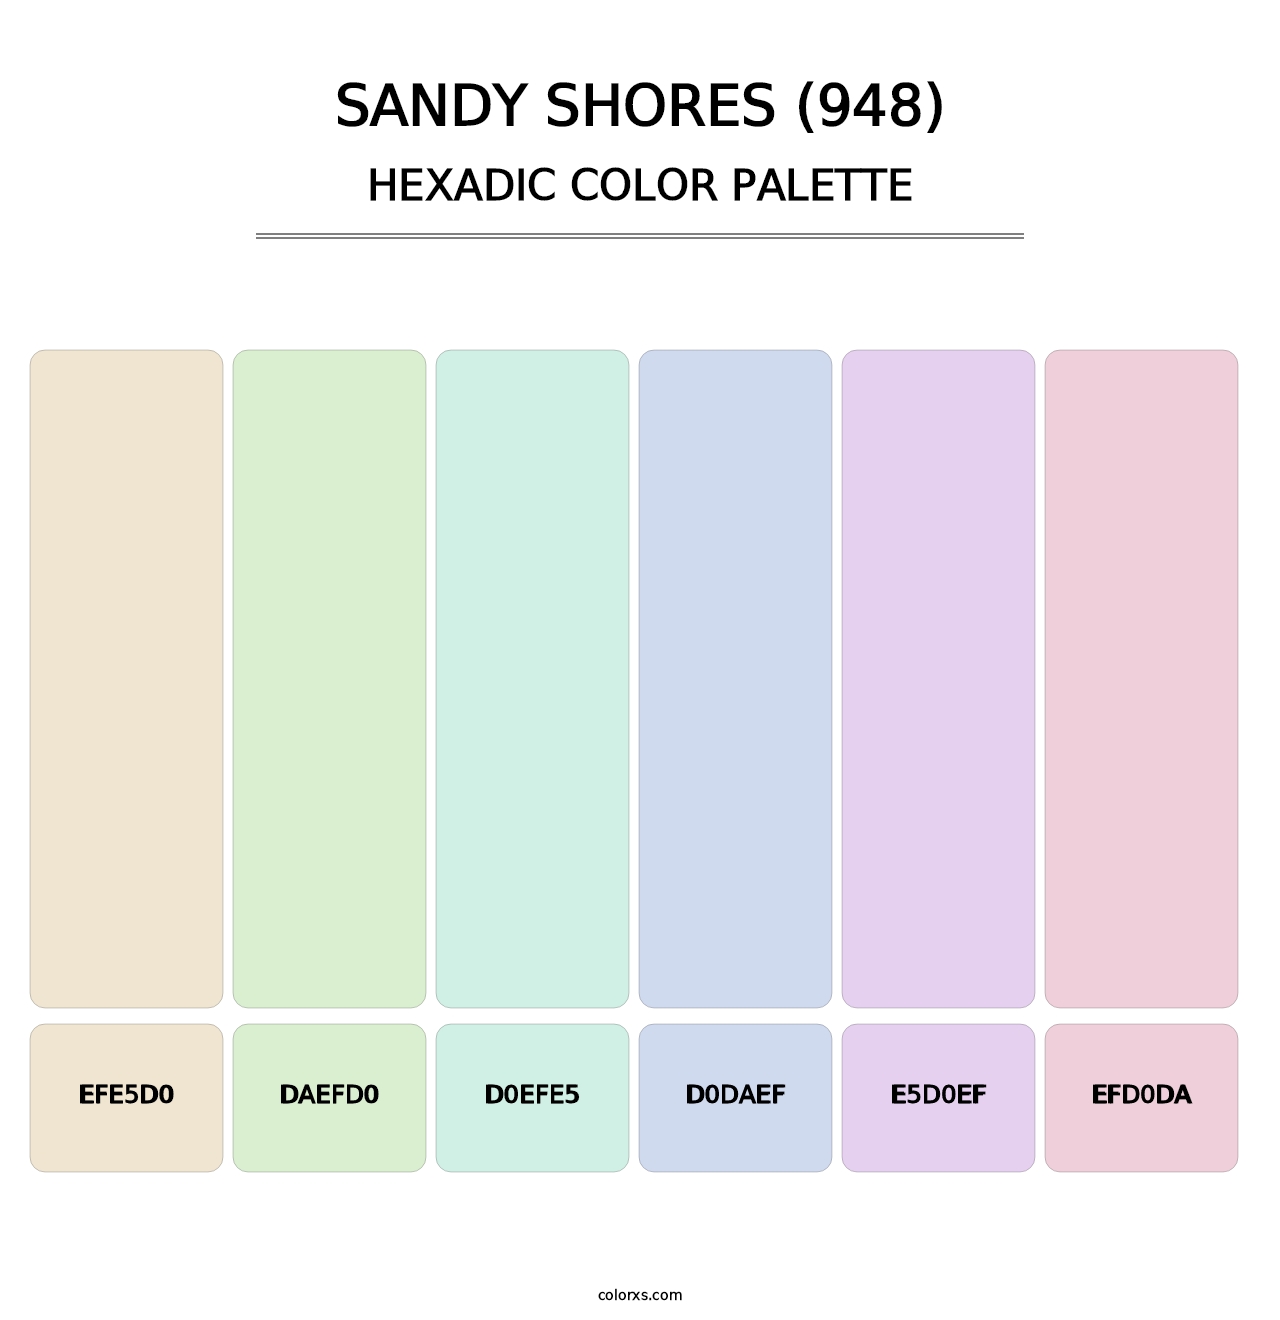 Sandy Shores (948) - Hexadic Color Palette